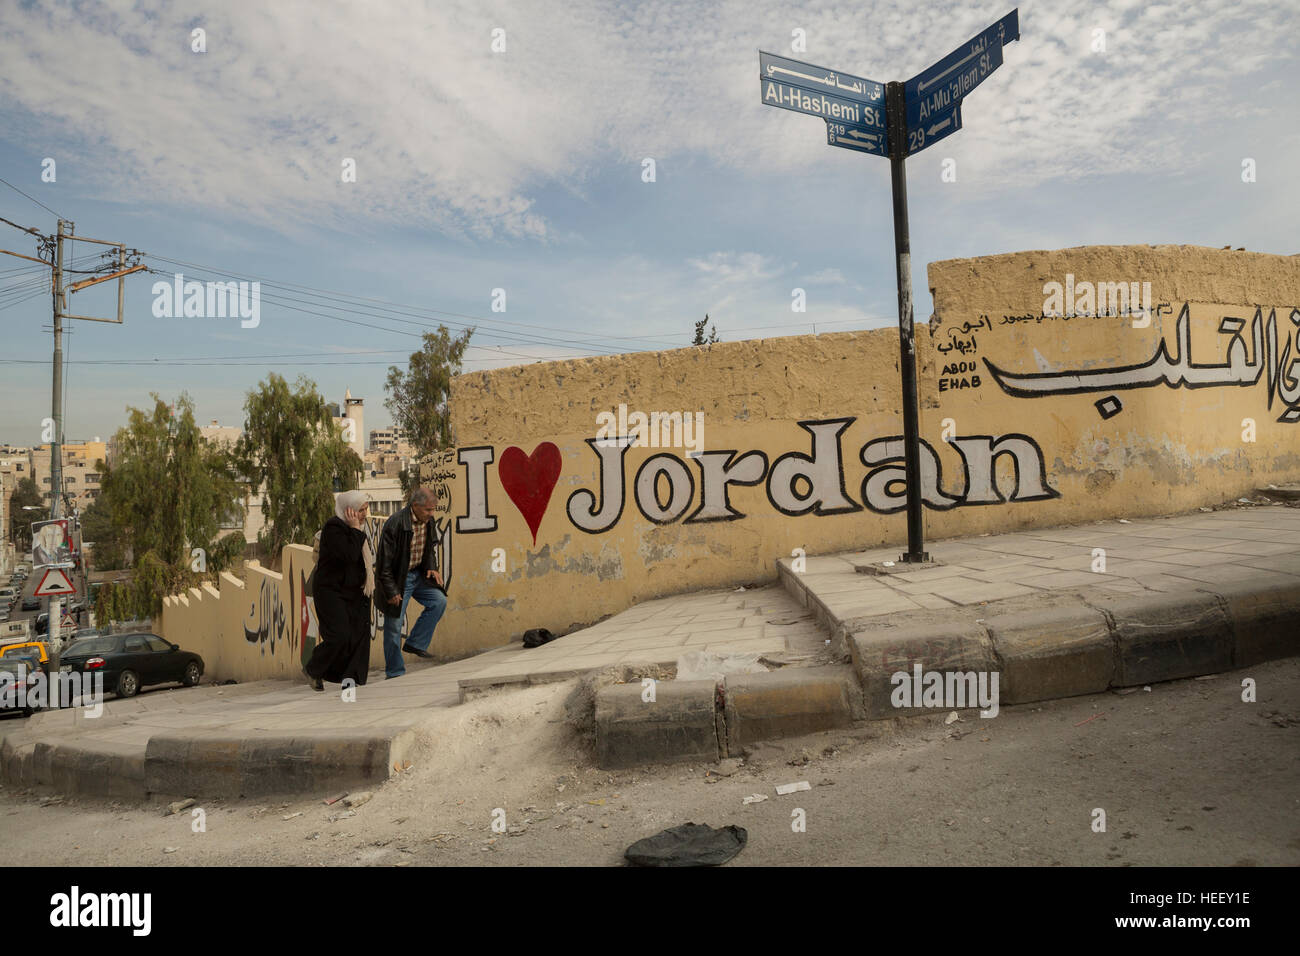 City scene in sprawling Zarqa, Jordan with an 'I love Jordan' mural. Stock Photo